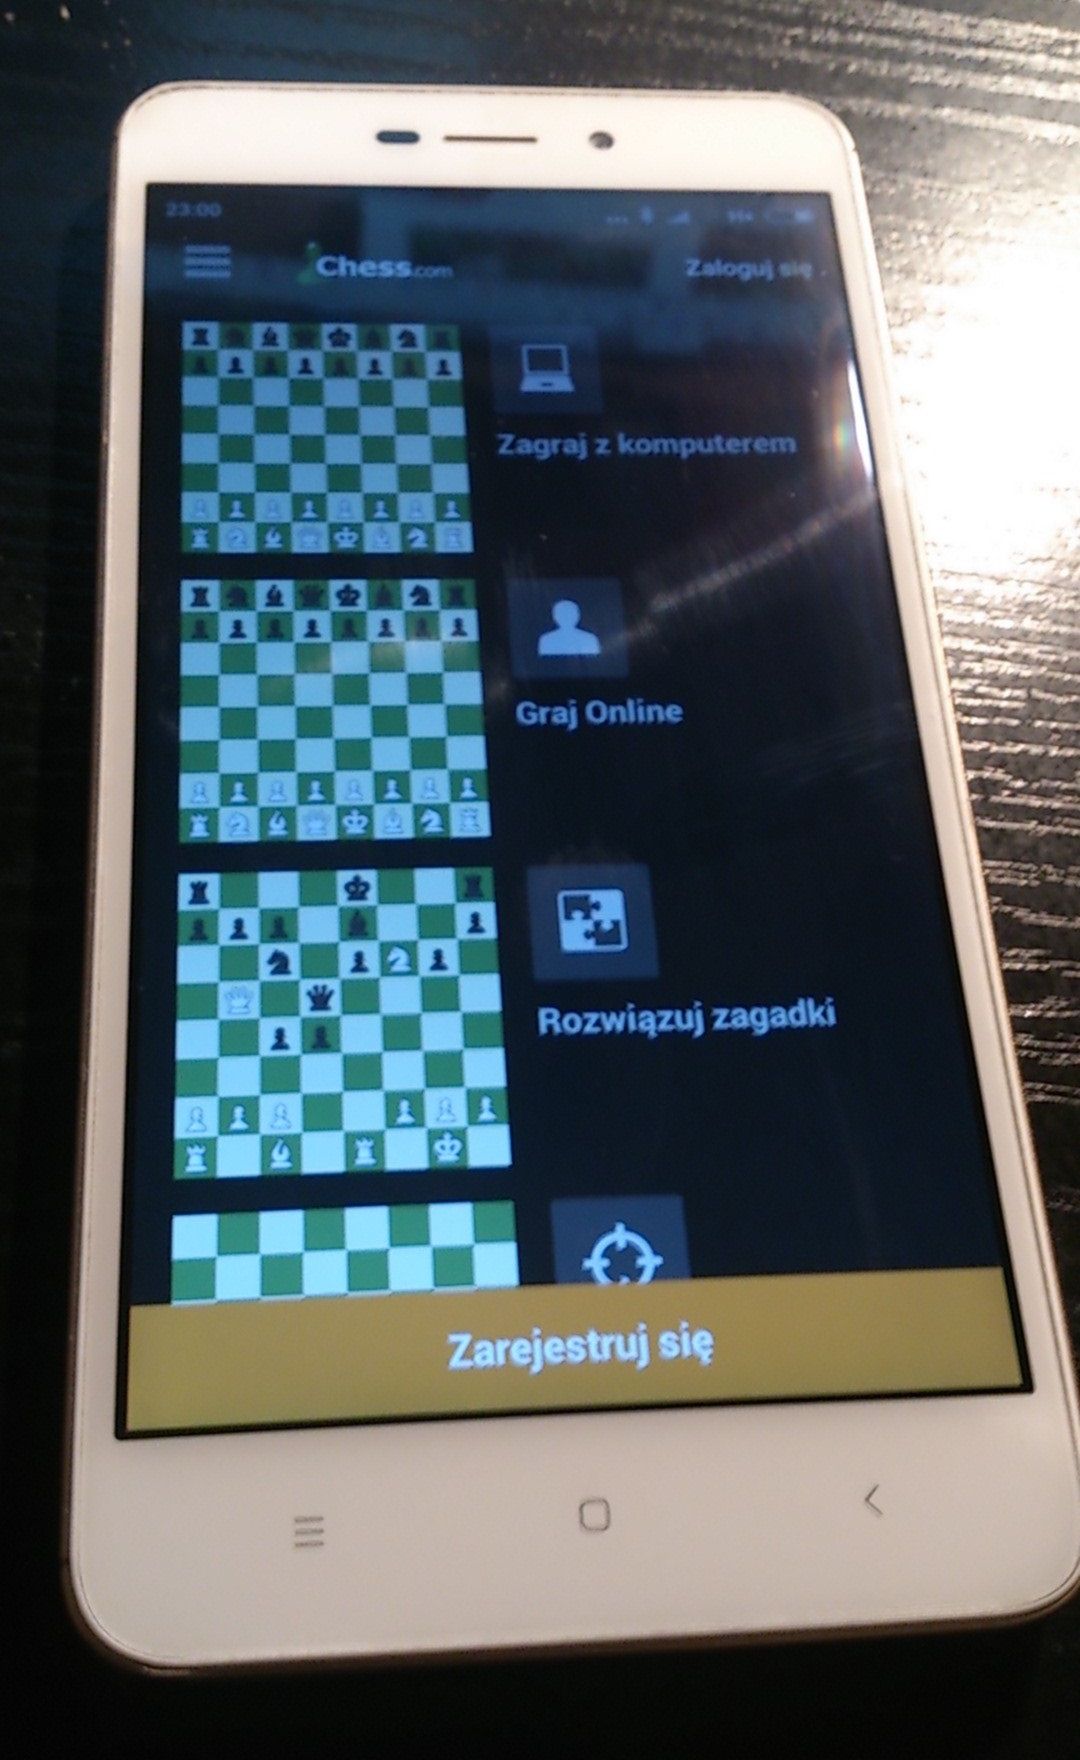 Chess · Play & Learn - najlepsza aplikacja szachowa... i to nie tylko z tutaj opisanych, ale w ogóle.